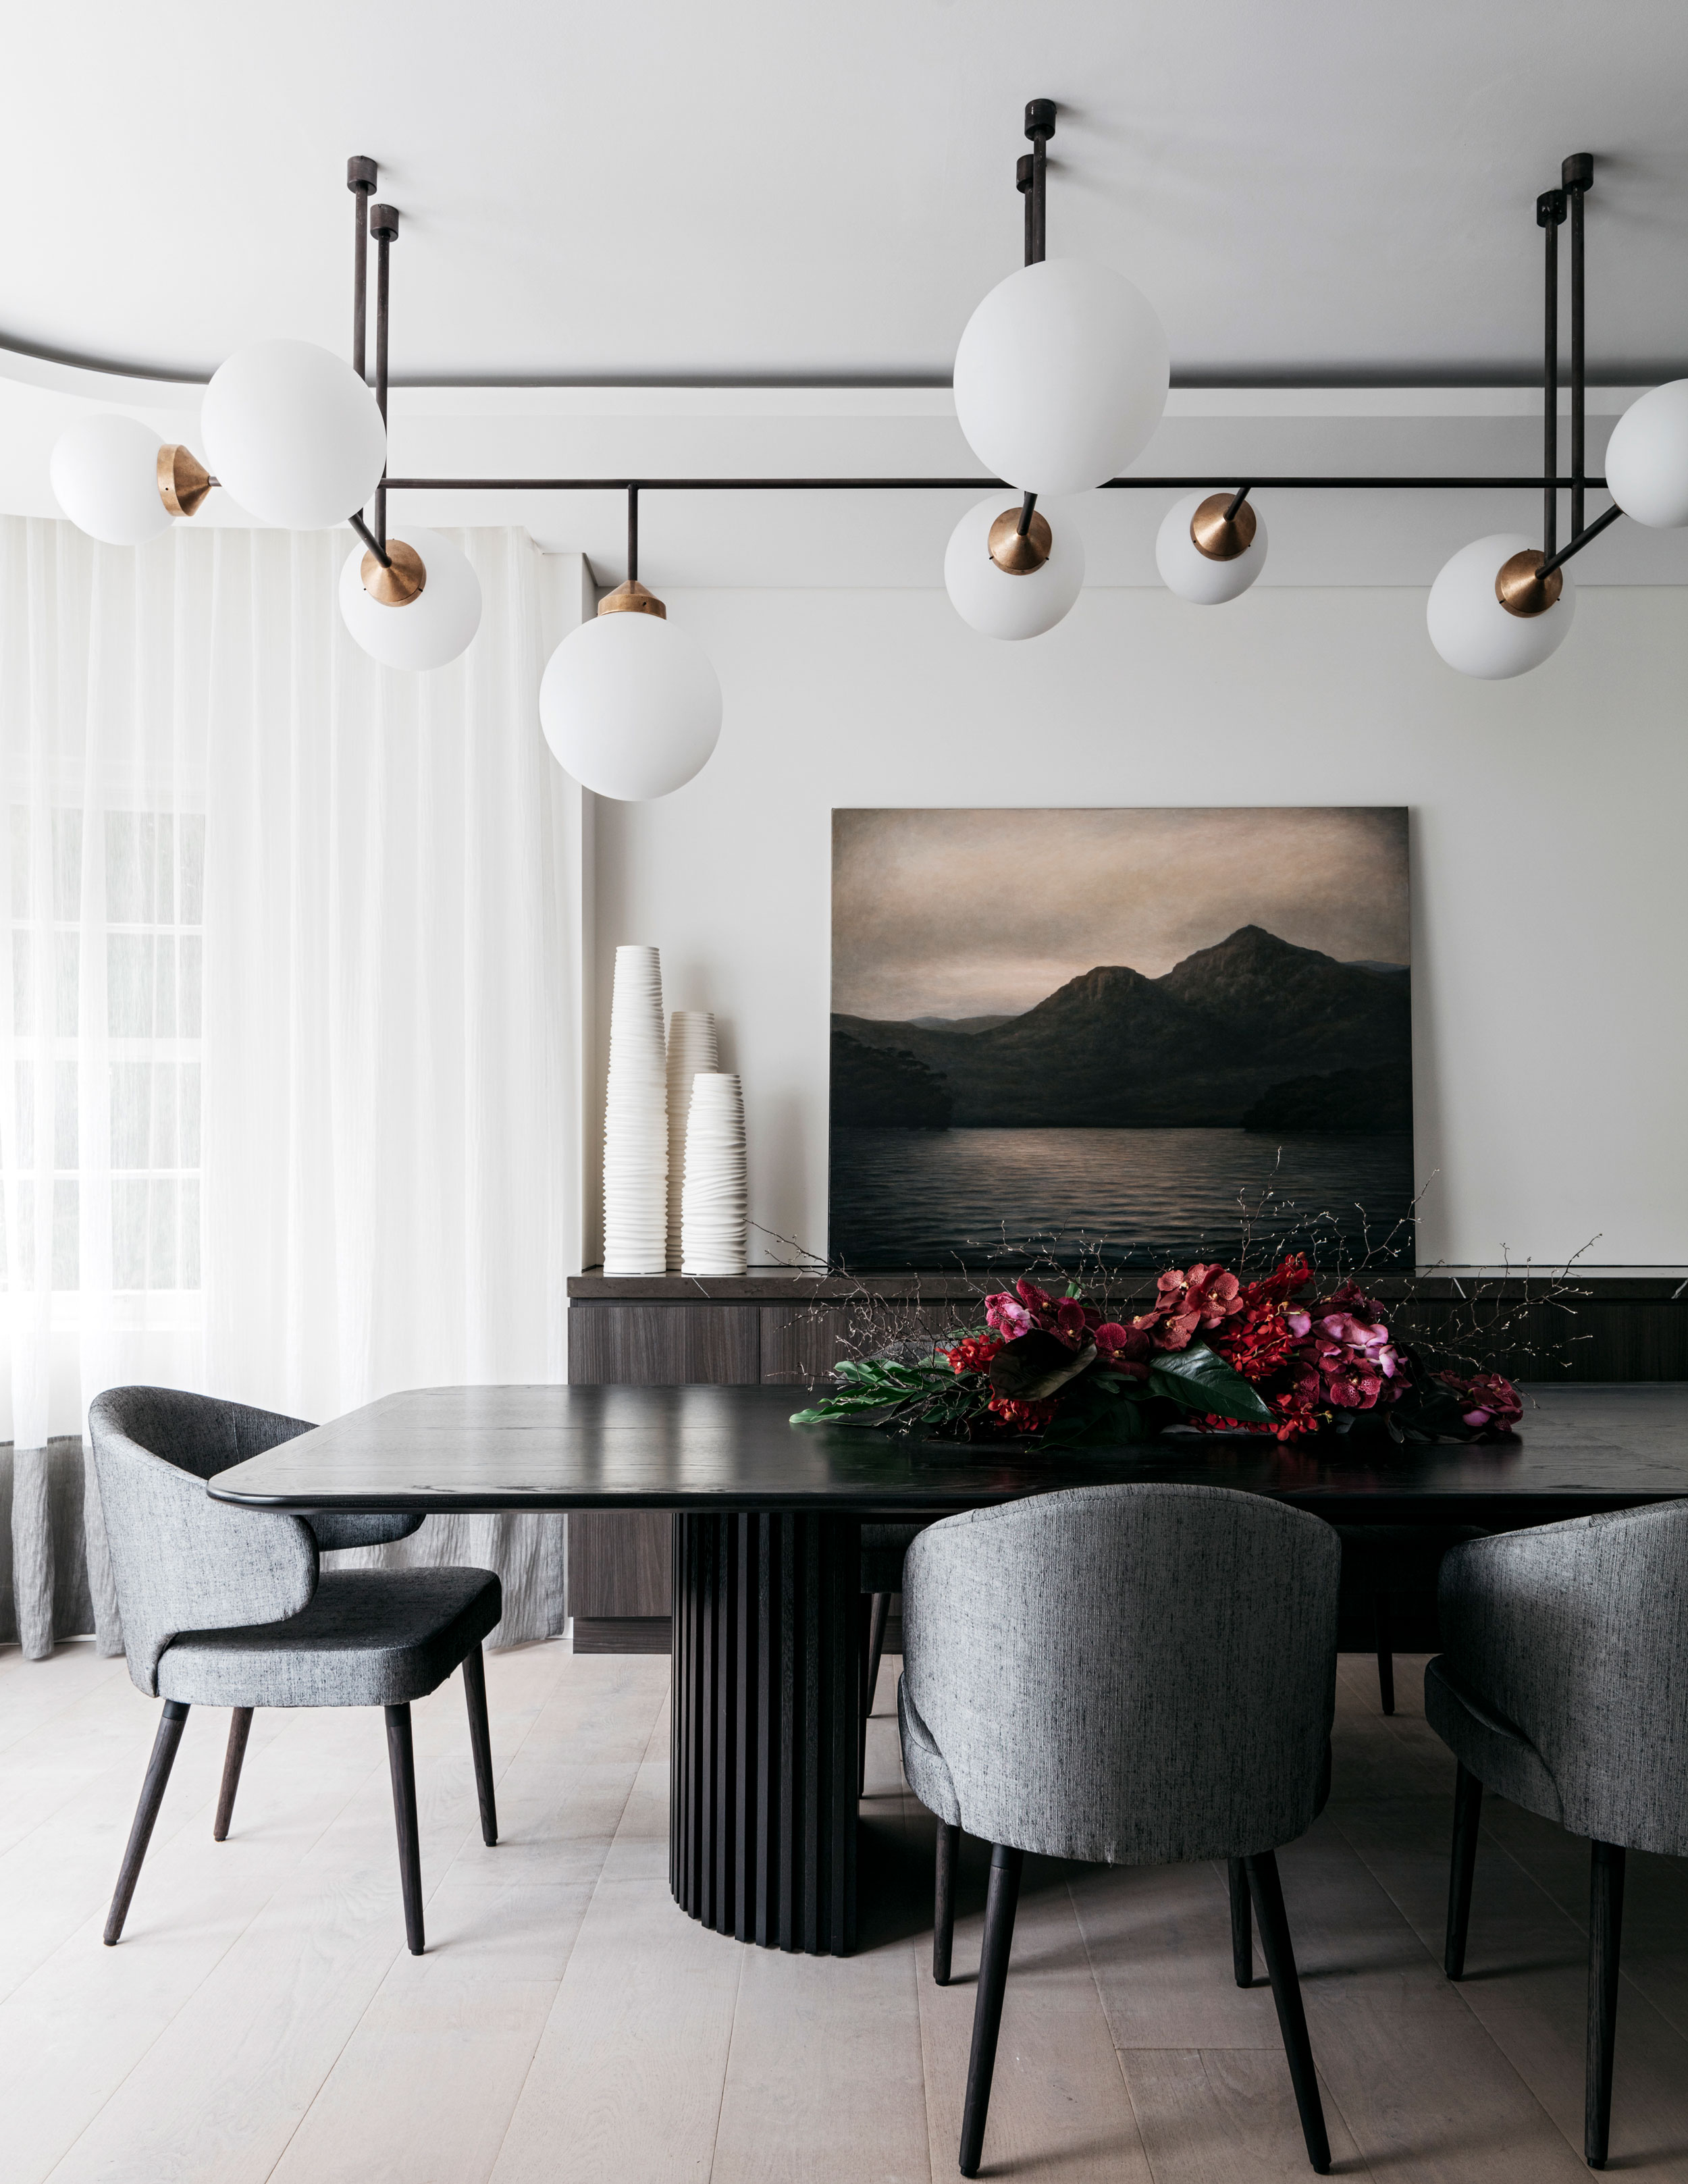 餐厅的设计简朴而灵动，以素雅朴质为底色，配以现代桌椅，描绘出和谐的用餐意境。